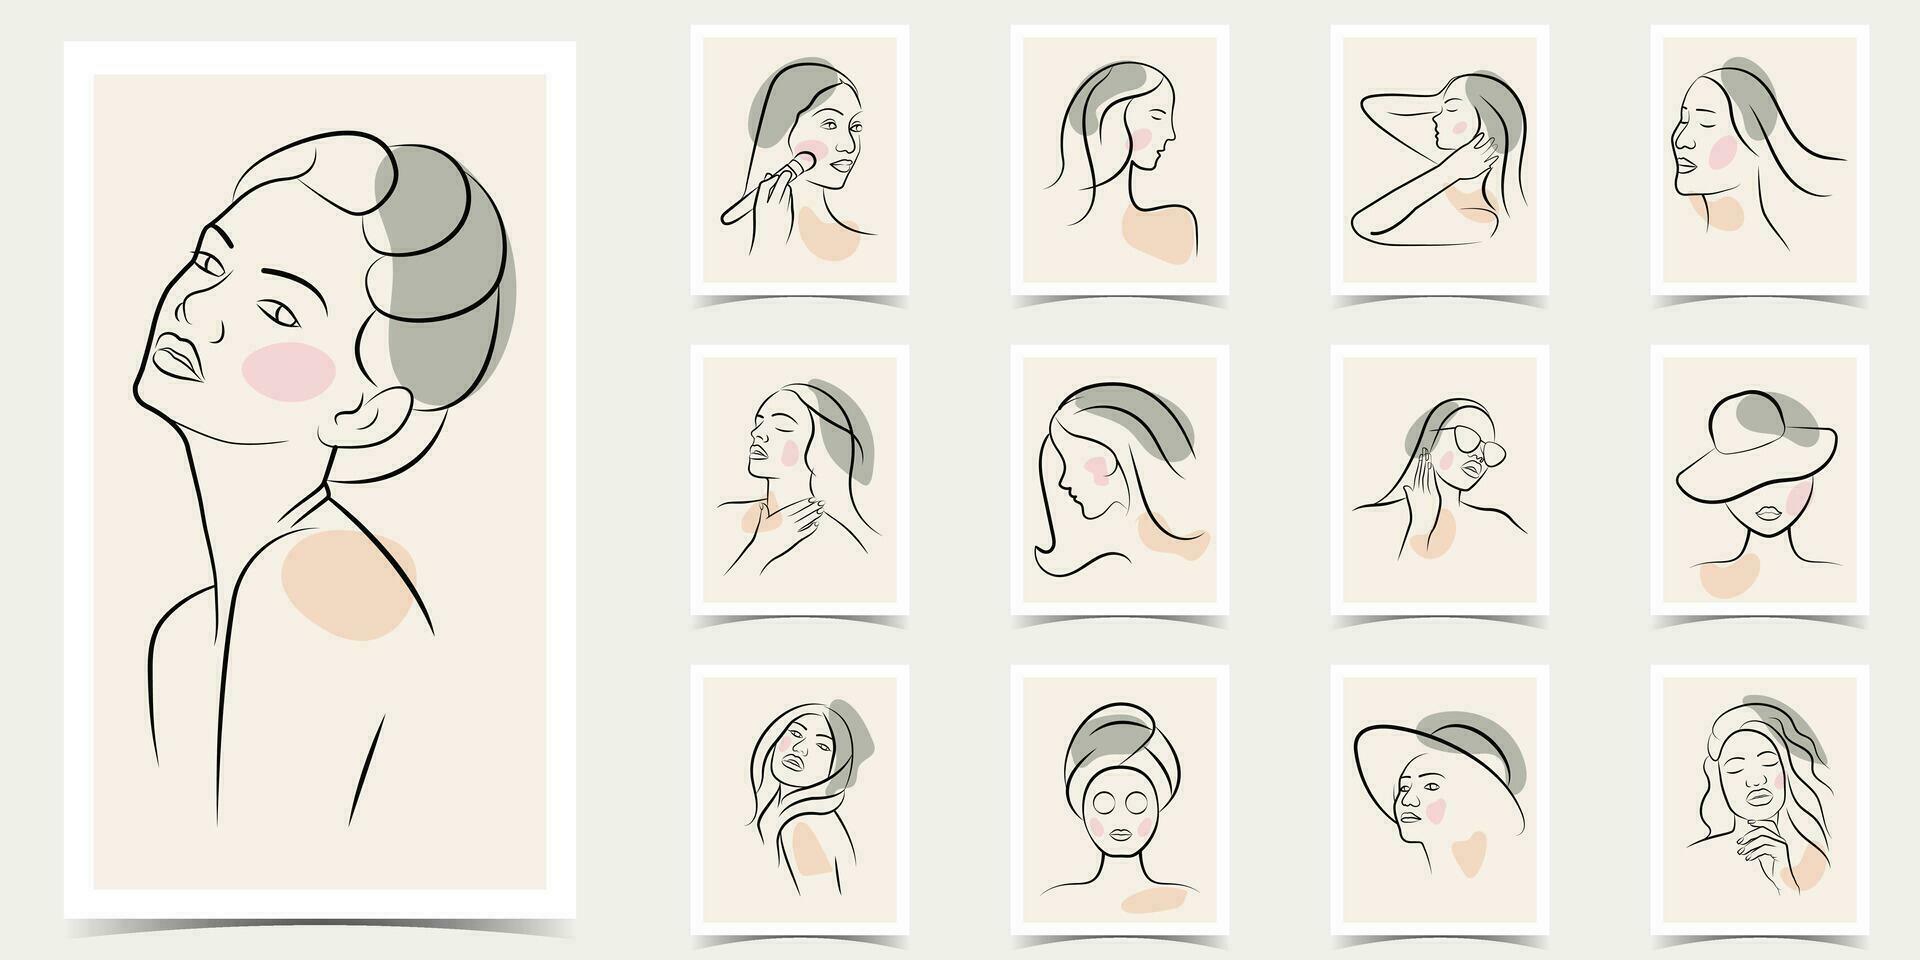 vrouw gezicht lijn kunst .vrouwelijk schoonheid logo. vrouw schoonheid mode concept .verschillend vrouw gezichten. vector illustraties ontwerp.